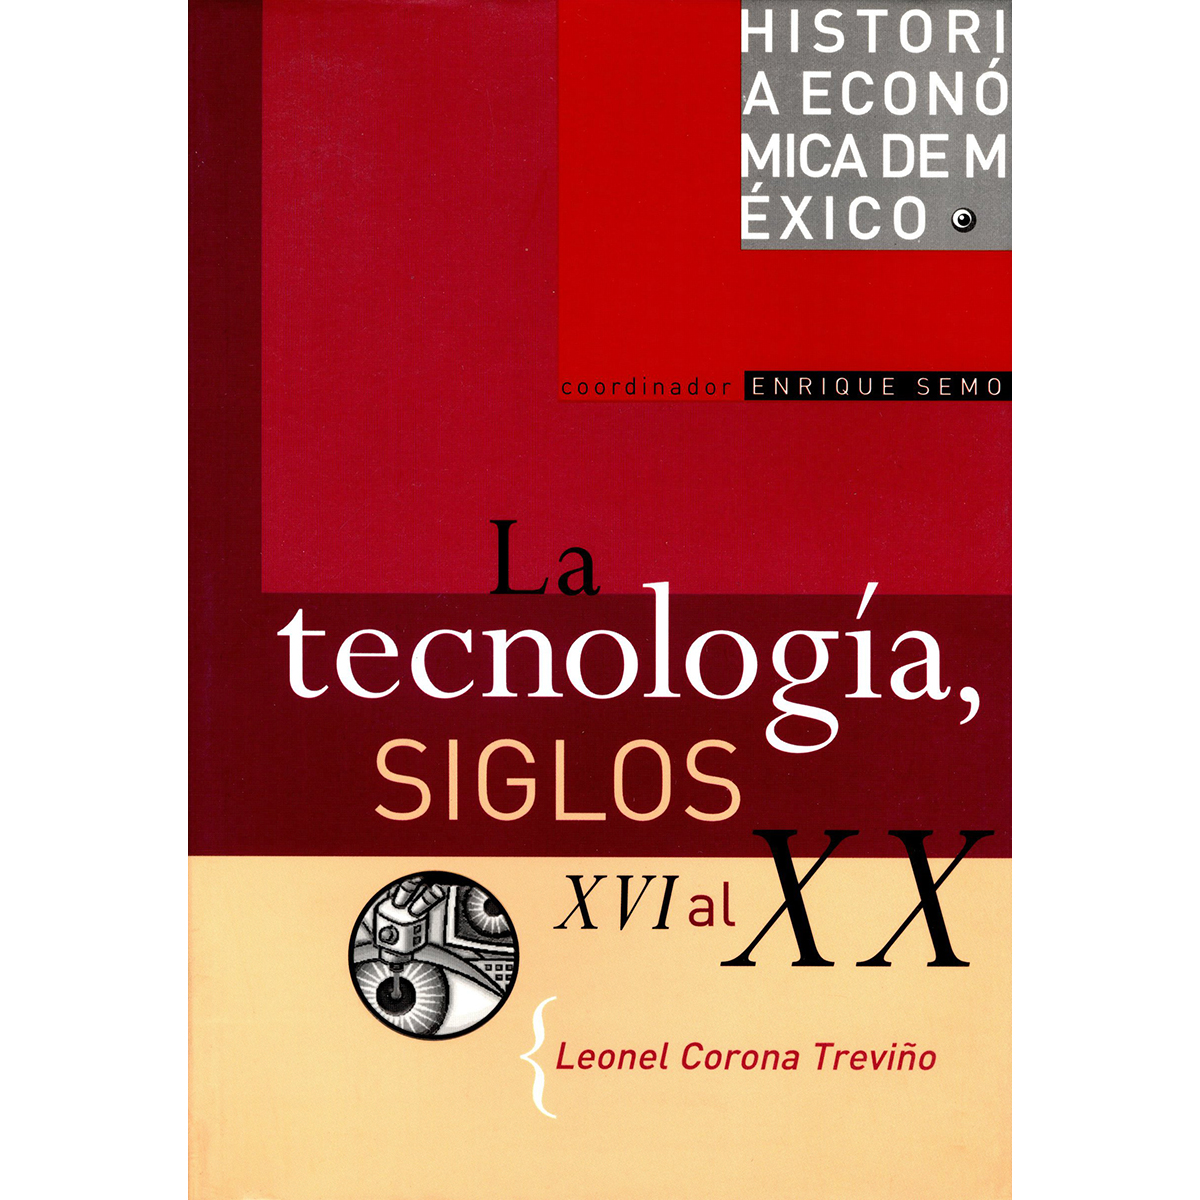 HISTORIA ECONÓMICA DE MÉXICO, VOL. 12. LA TECNOLOGÍA, SIGLOS XVI AL XX